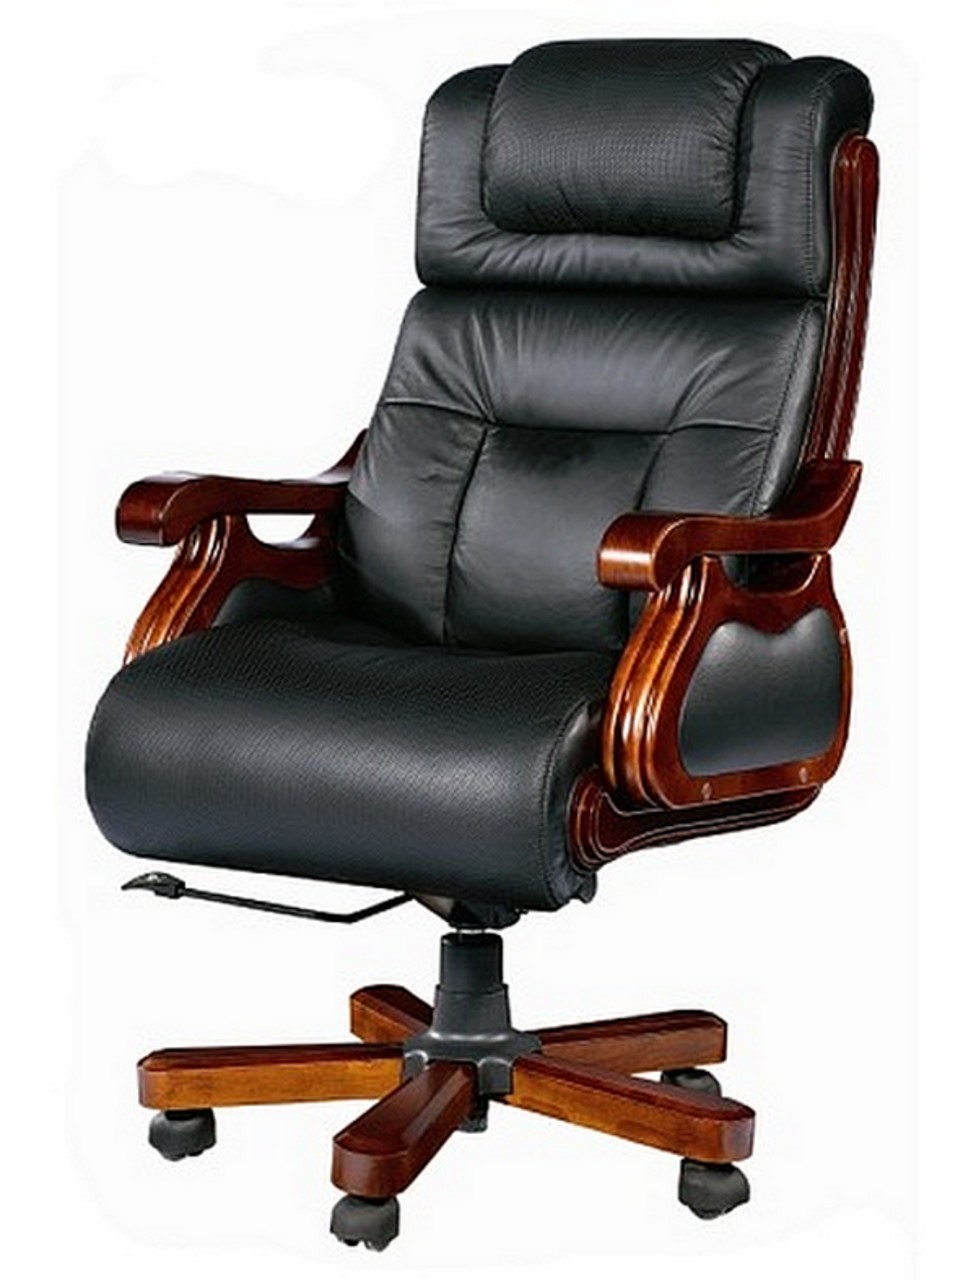 Нюансы выбора офисного кресла для руководителя, сотрудников и гостей 1 - ДиванеТТо